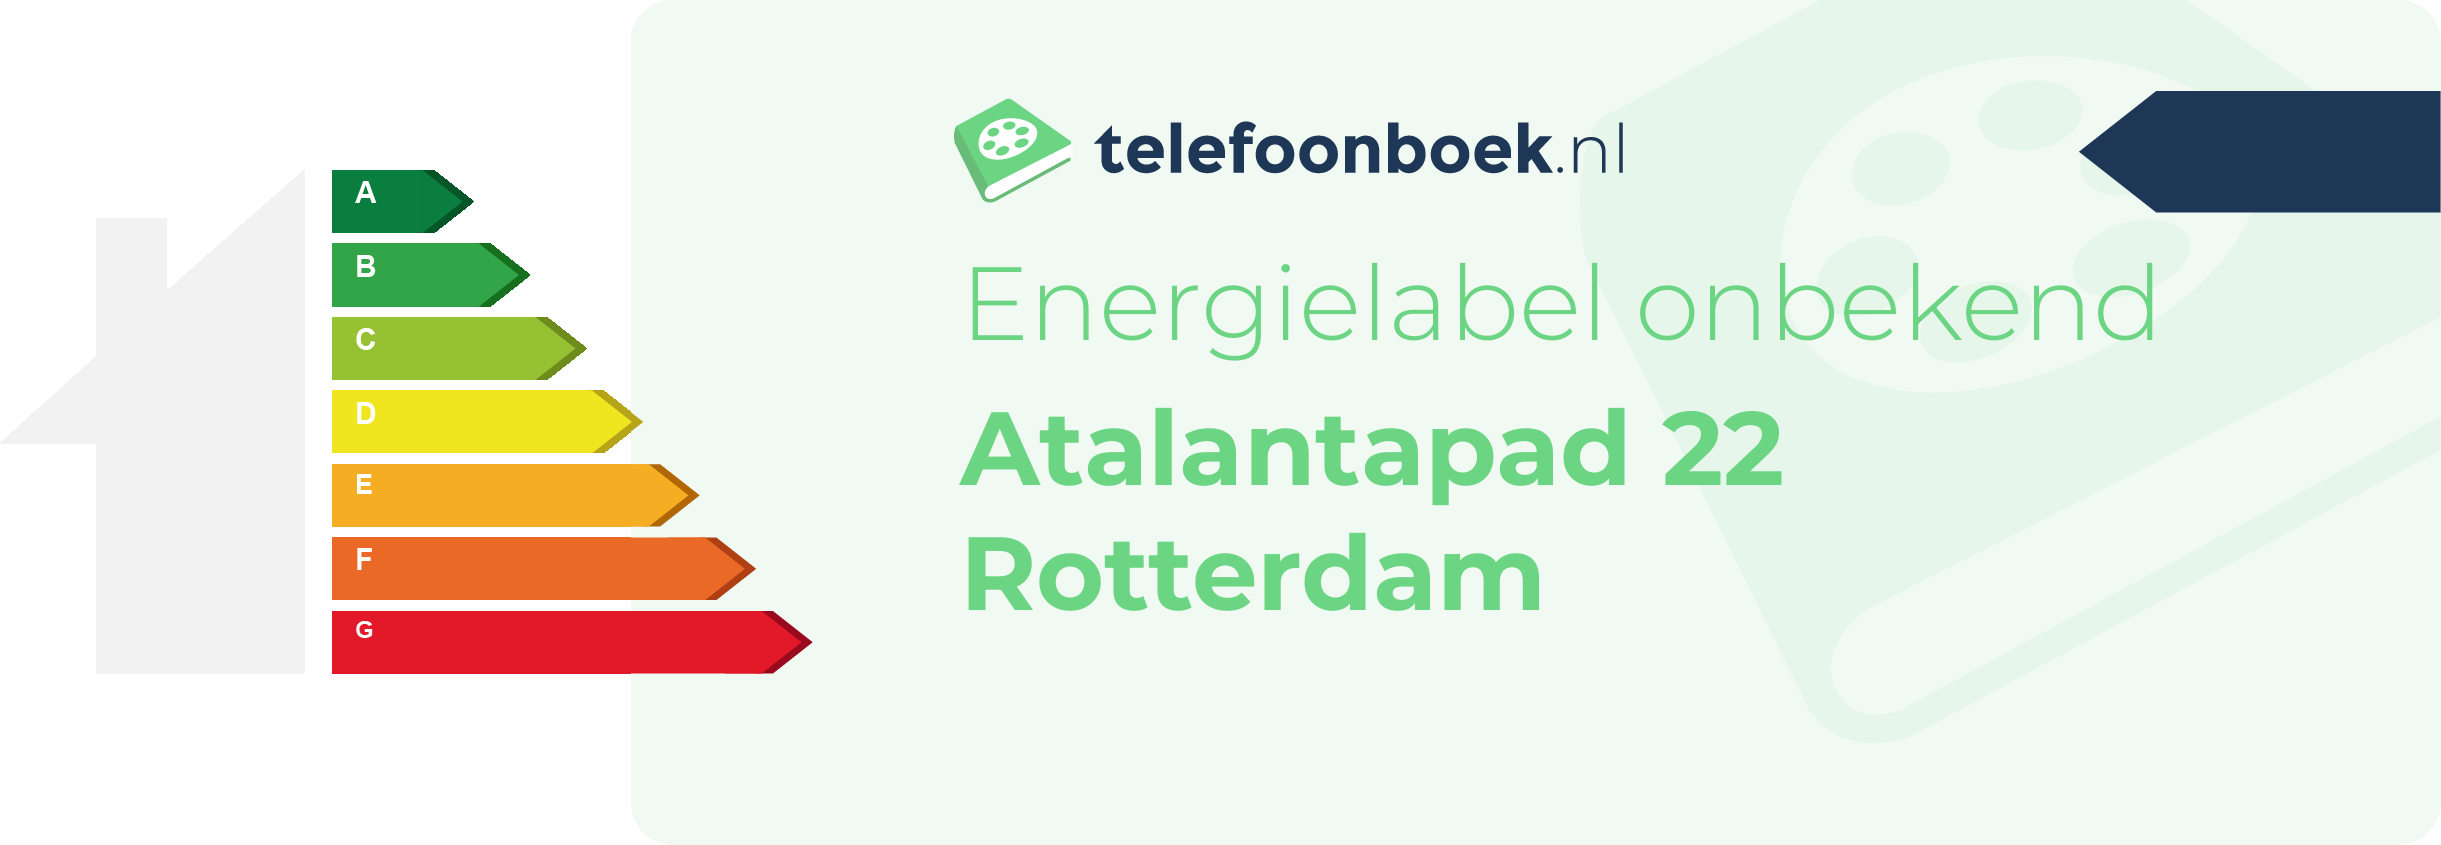 Energielabel Atalantapad 22 Rotterdam